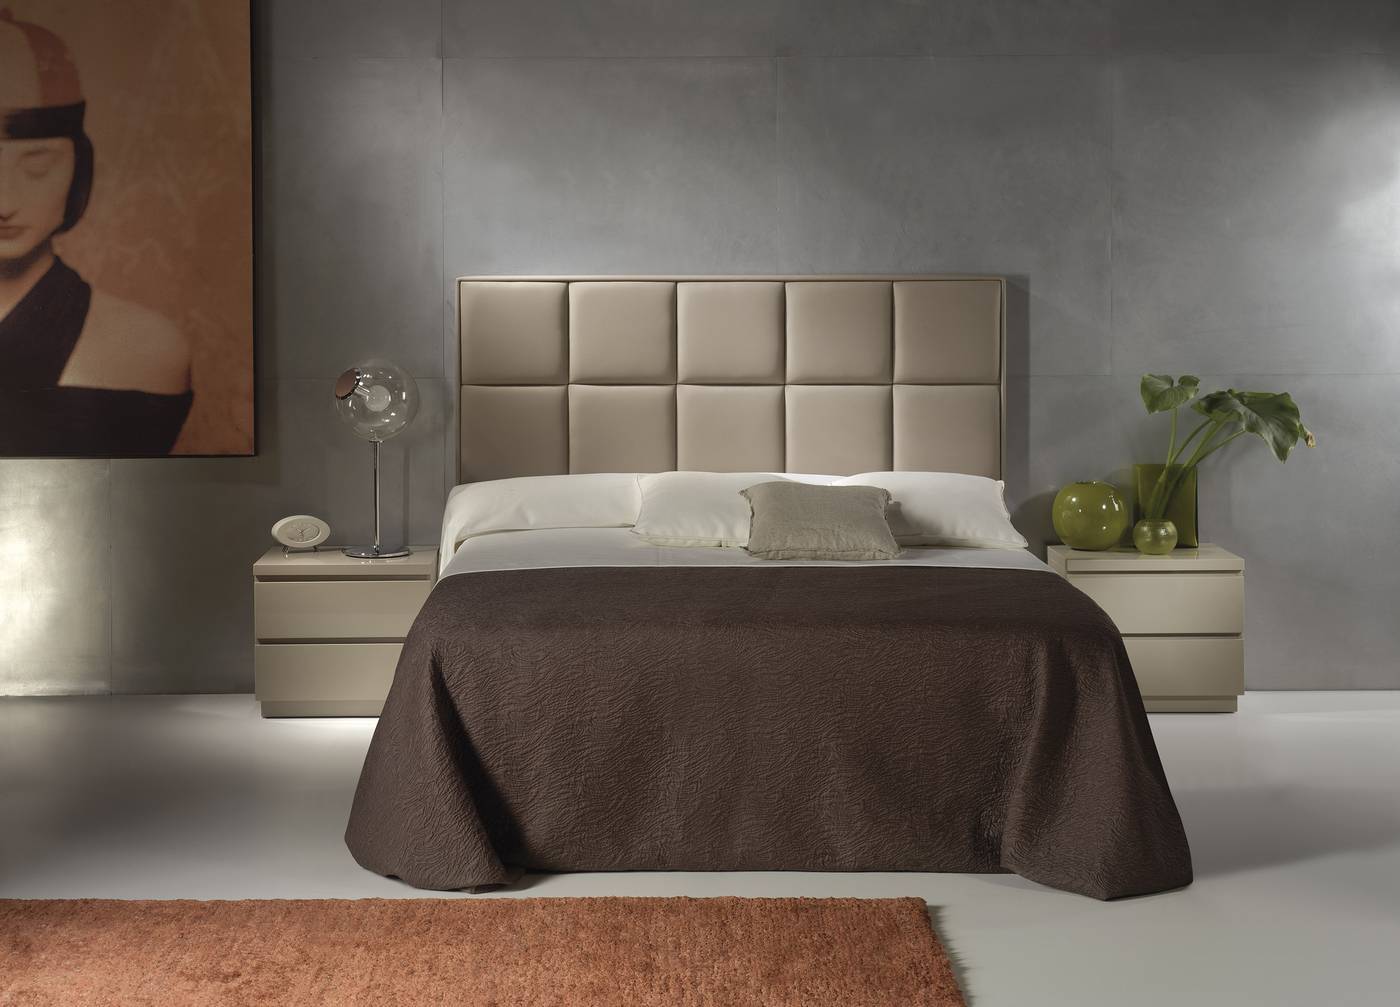 Cabezal LD Noa - Cabecero tapizado en polipiel, tela o terciopelo, para cama de 150 cm, disponible en varios colores.